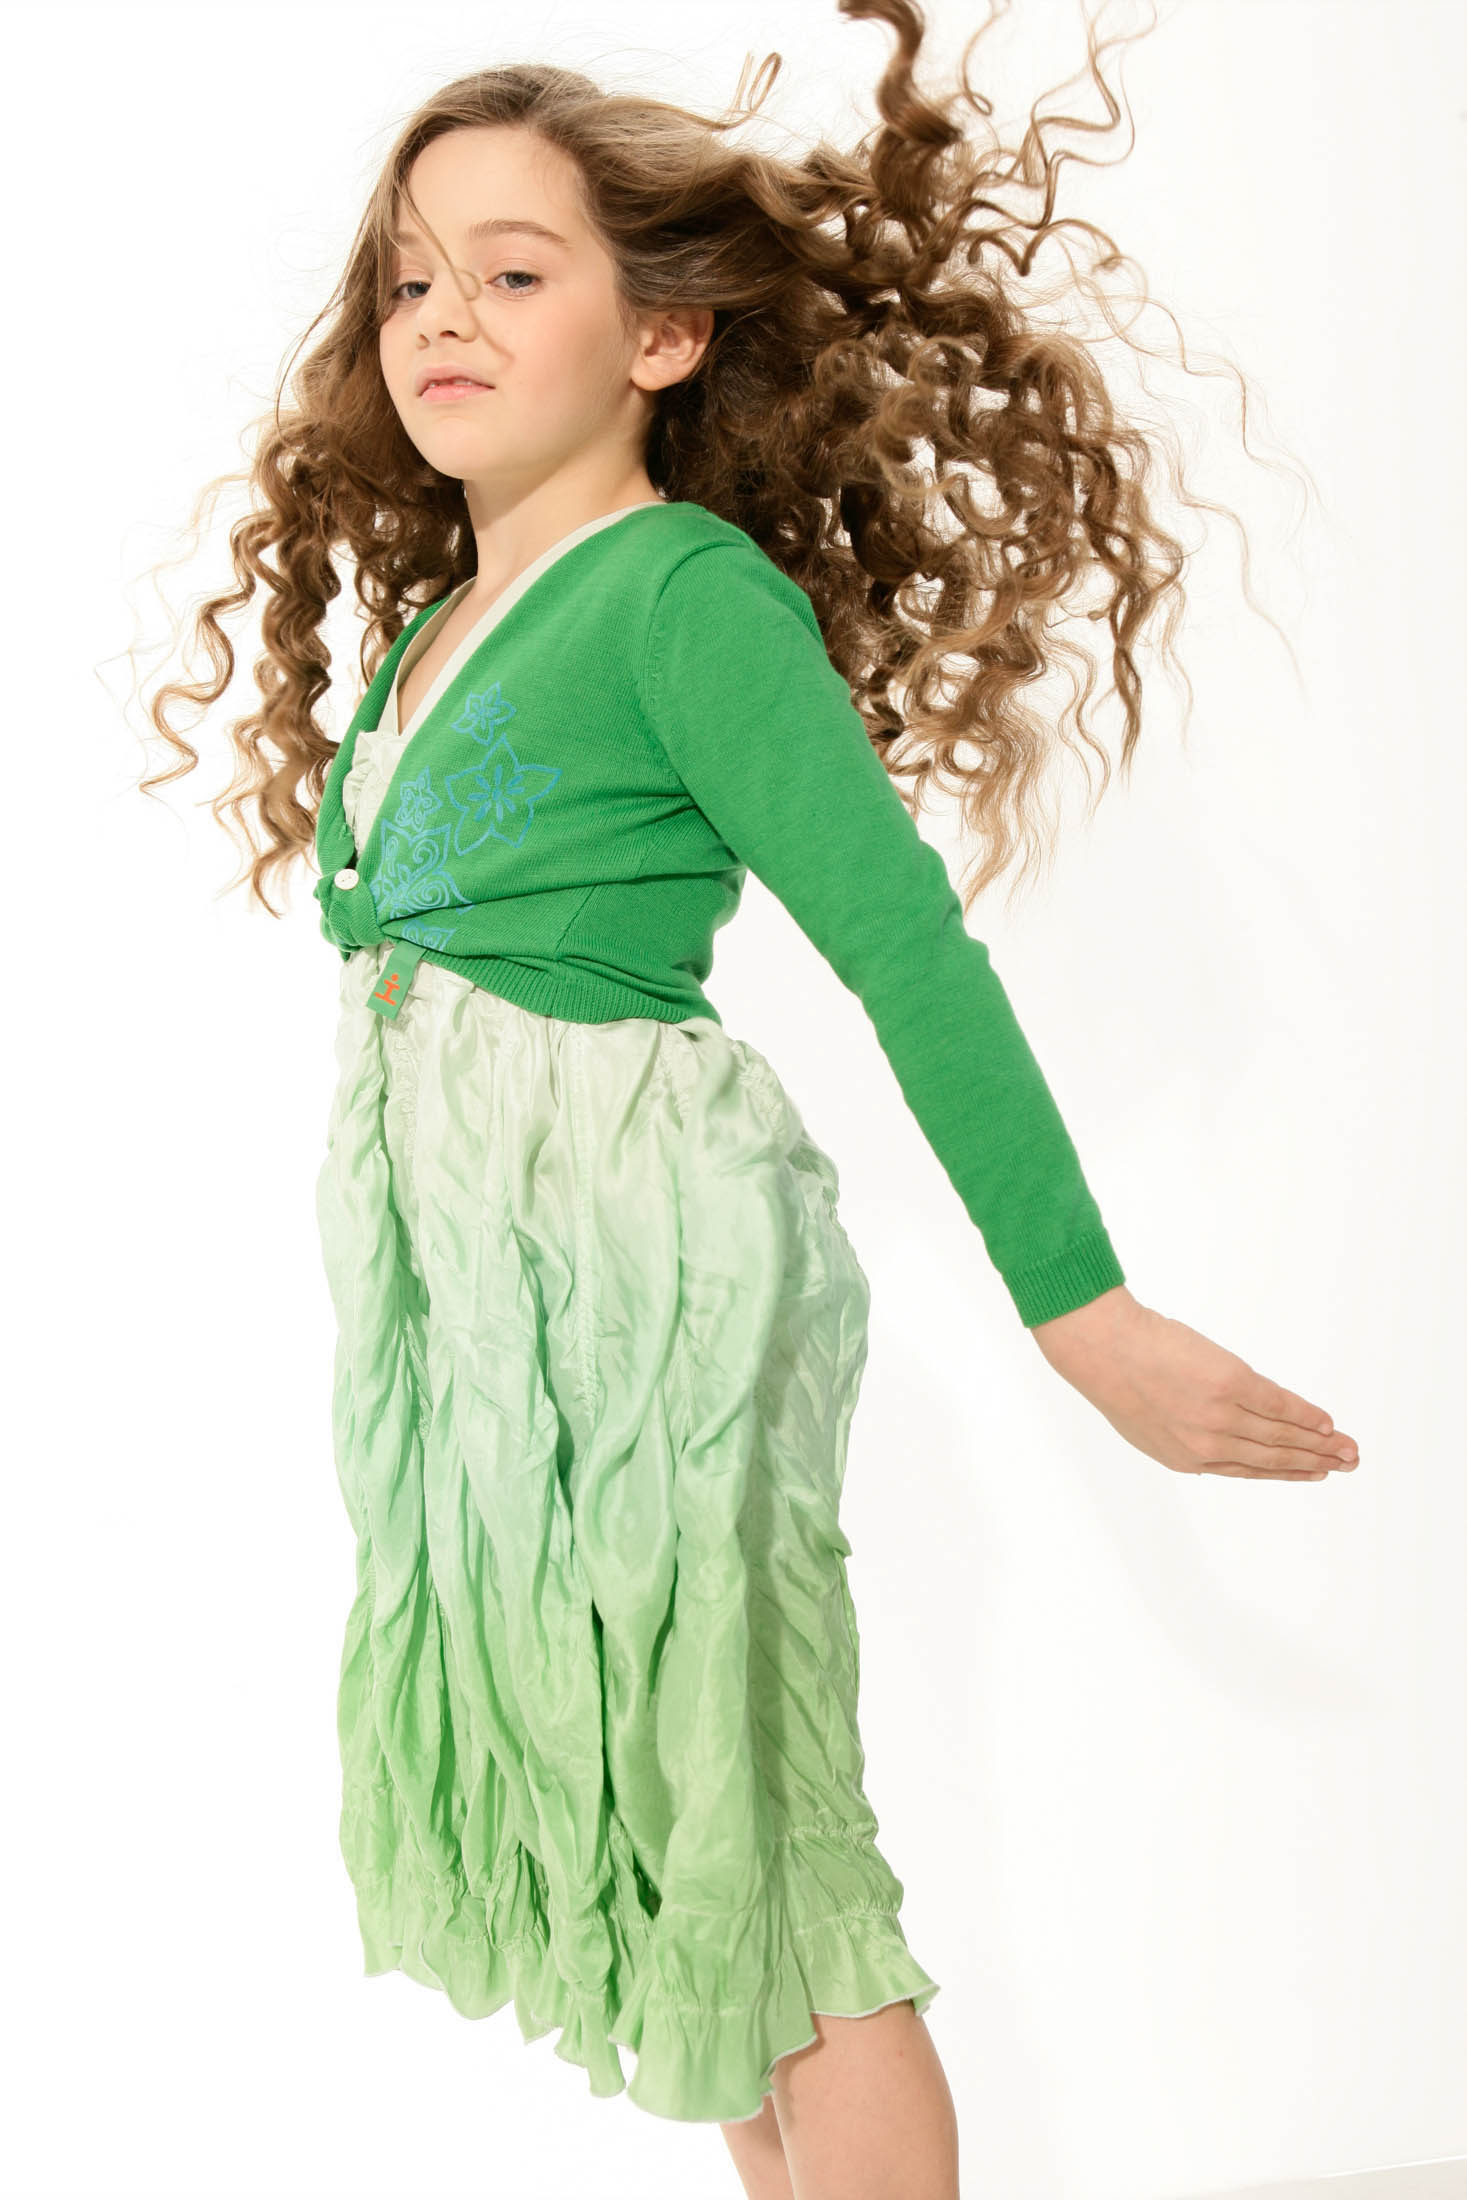 Ein junges Mädchen mit langen, lockigen Haaren in Bewegung, trägt eine grüne Strickjacke und ein hellgrünes, zerknittertes Kleid vor einem weißen Hintergrund. © Fotografie Tomas Rodriguez